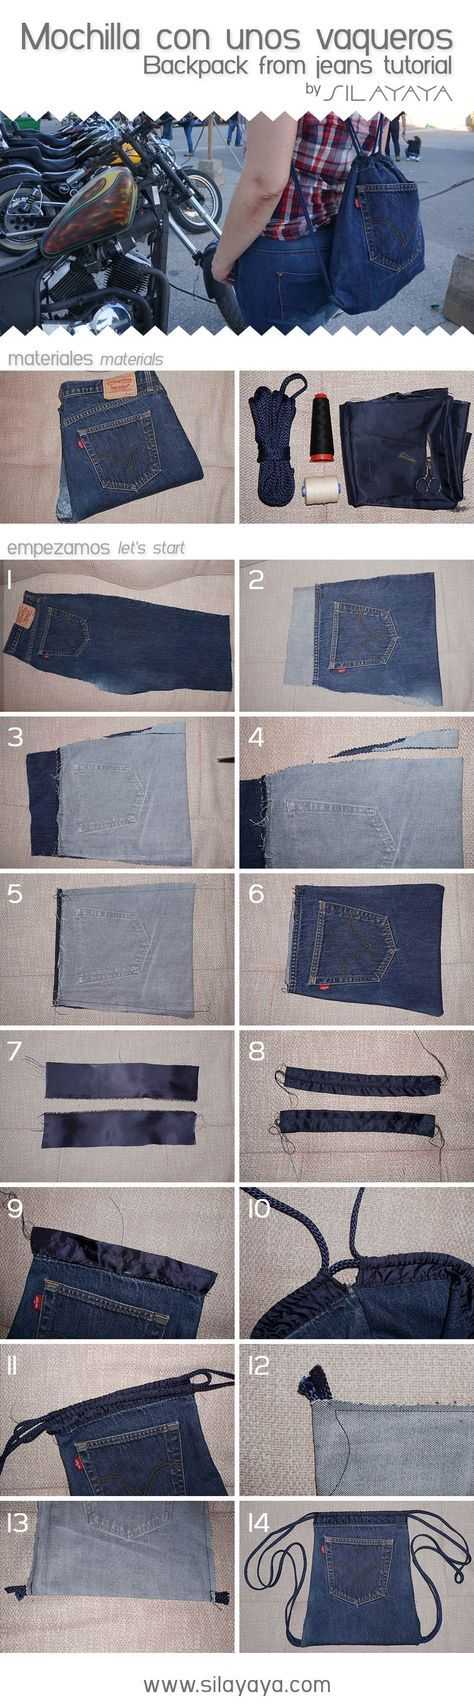 Переделка одежды из старой в стильную своими руками: идеи, выкройки, фото до и после